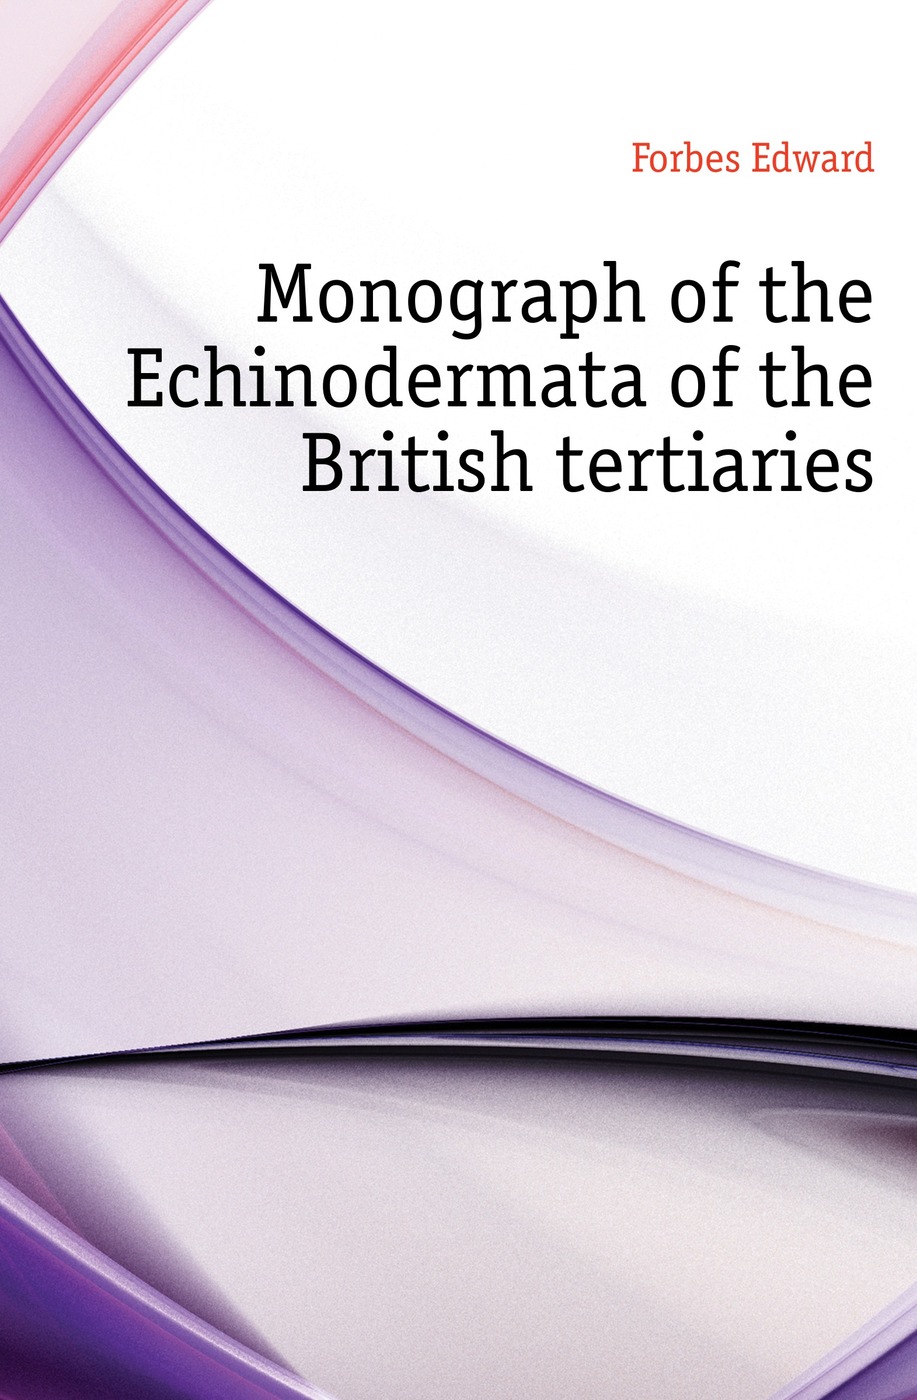 Monograph of the Echinodermata of the British tertiaries